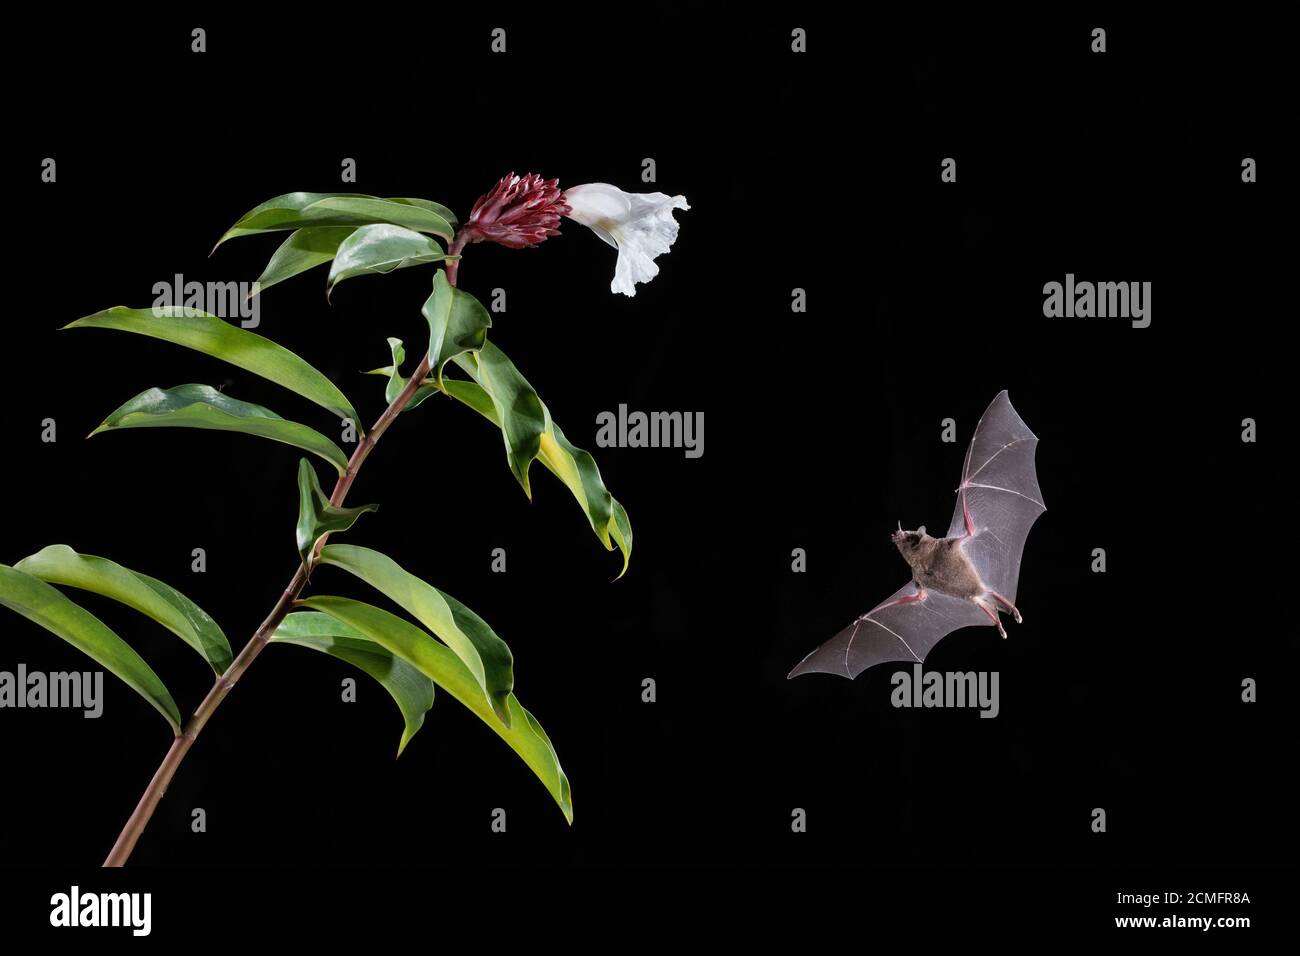 Le Bat long tongué de Pallas (Glossophaga soricina) se nourrissant de la fleur de Costus blanc (Costus speciosus), forêt pluviale des plaines, Costa Rica Banque D'Images